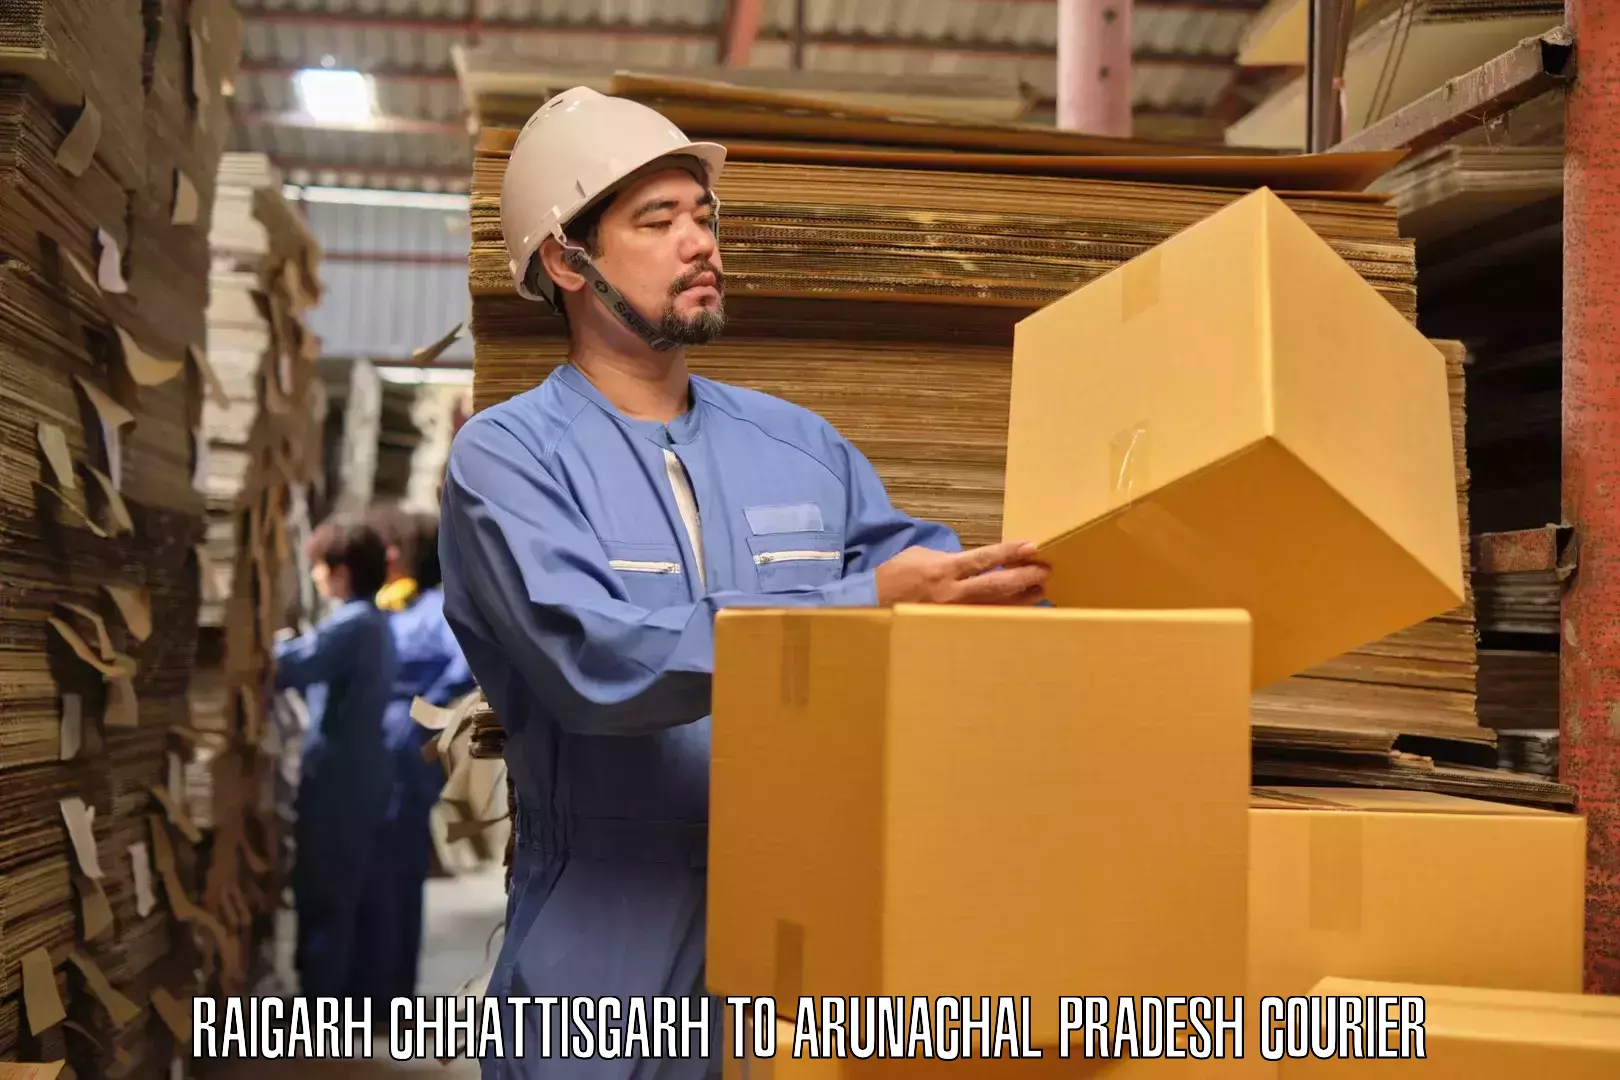 Furniture movers and packers Raigarh Chhattisgarh to Dirang